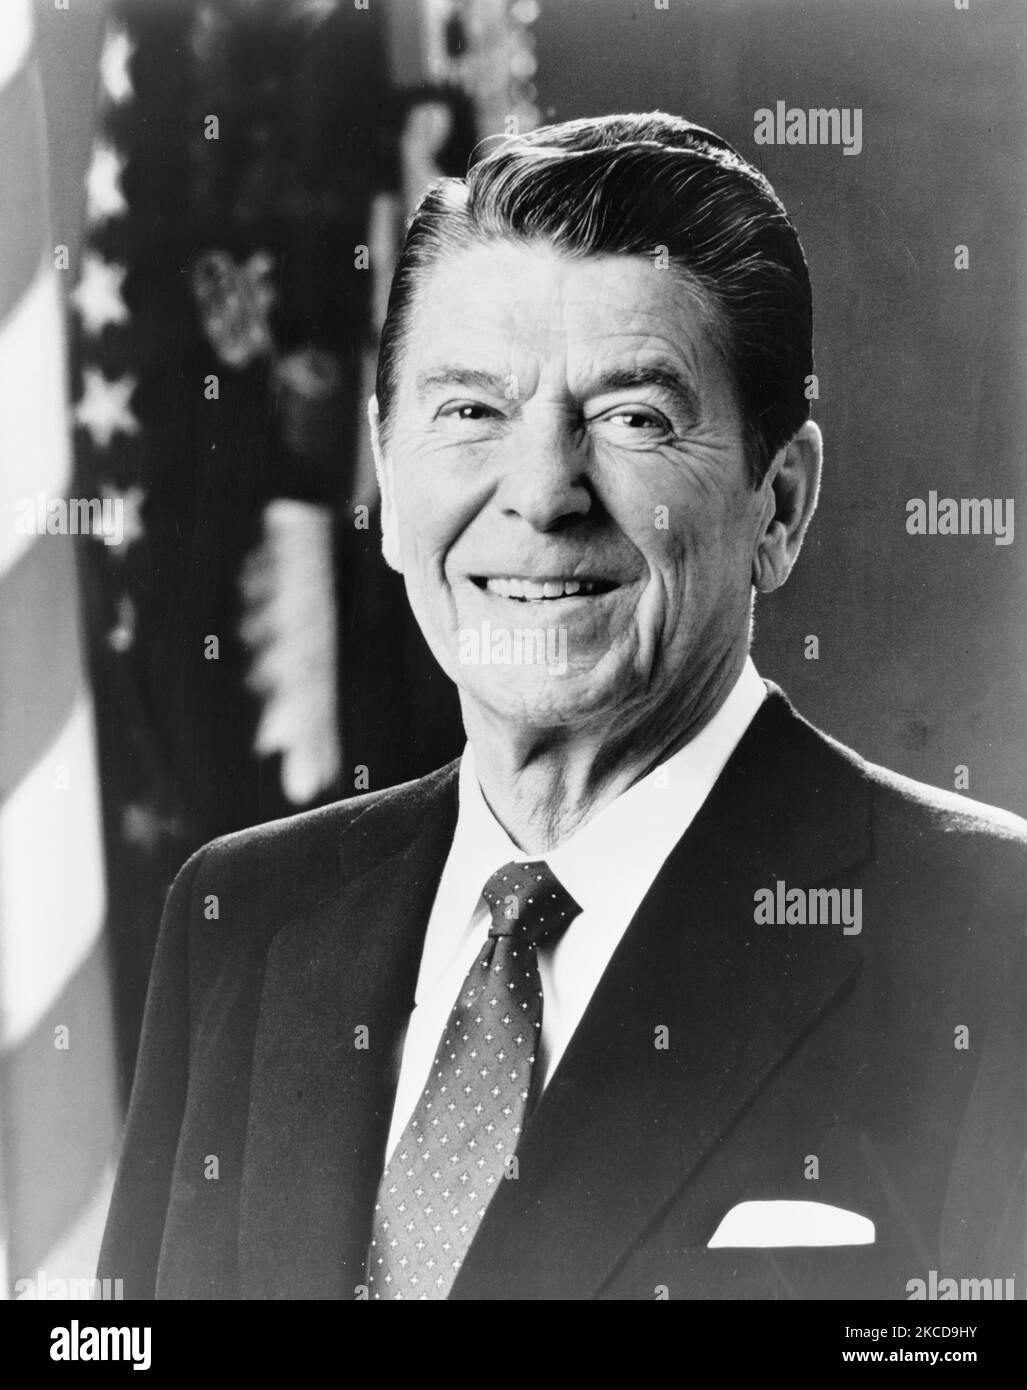 Ritratto del presidente Ronald Reagan. Foto Stock